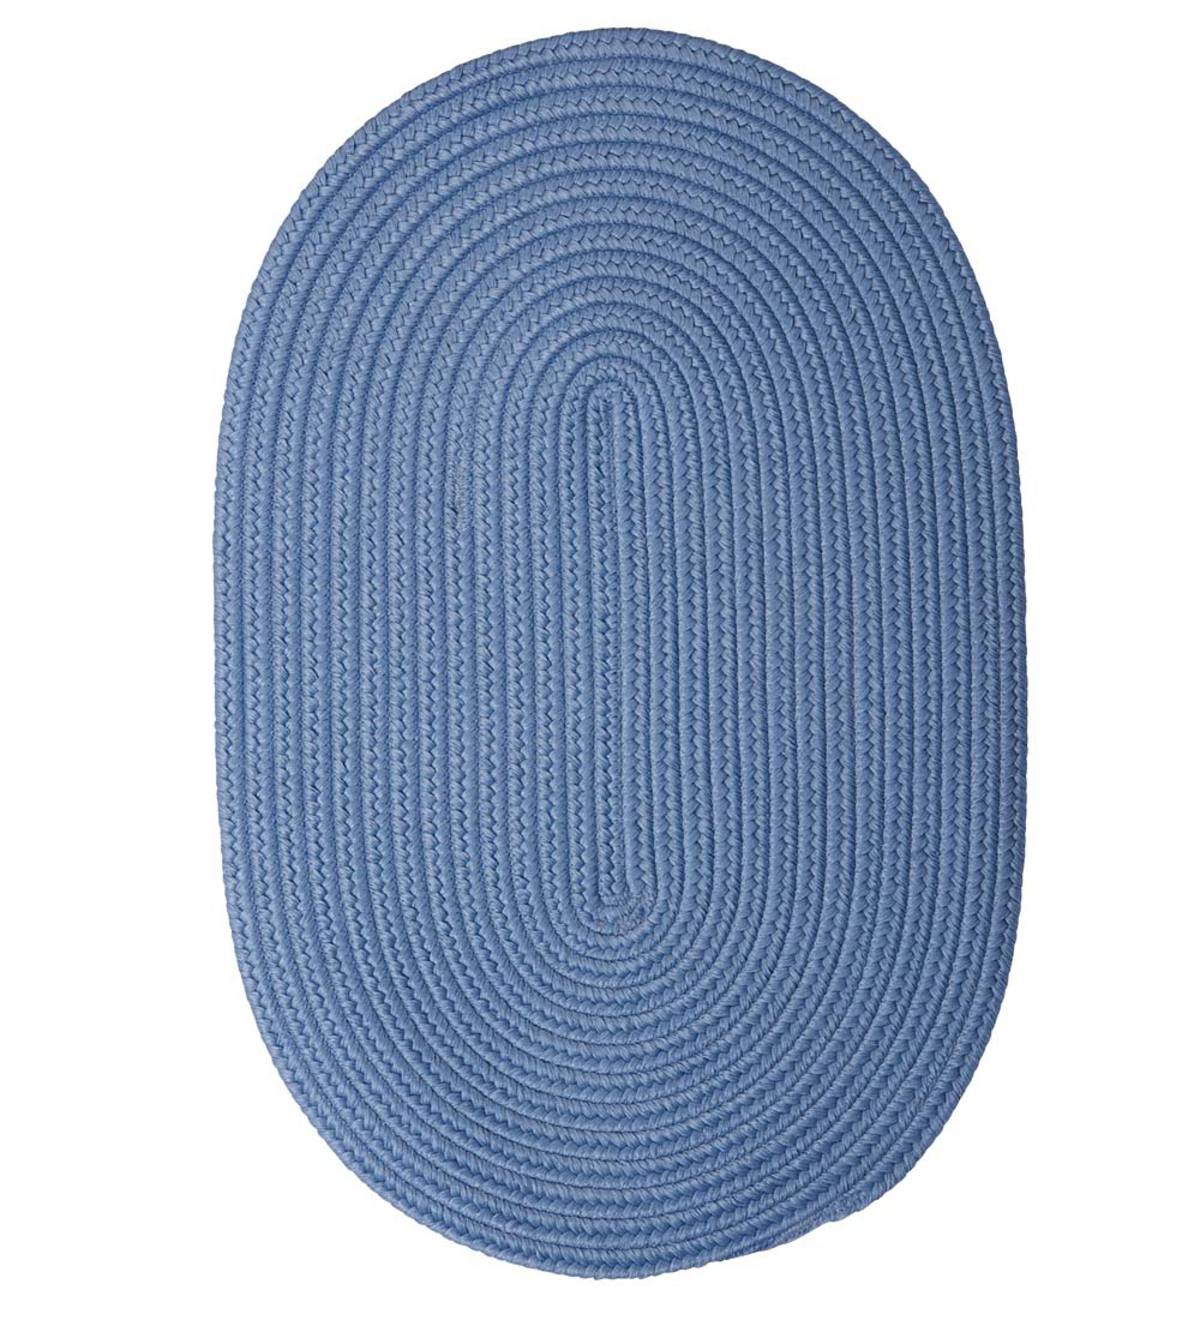 8' Round Braided Rug - Blue